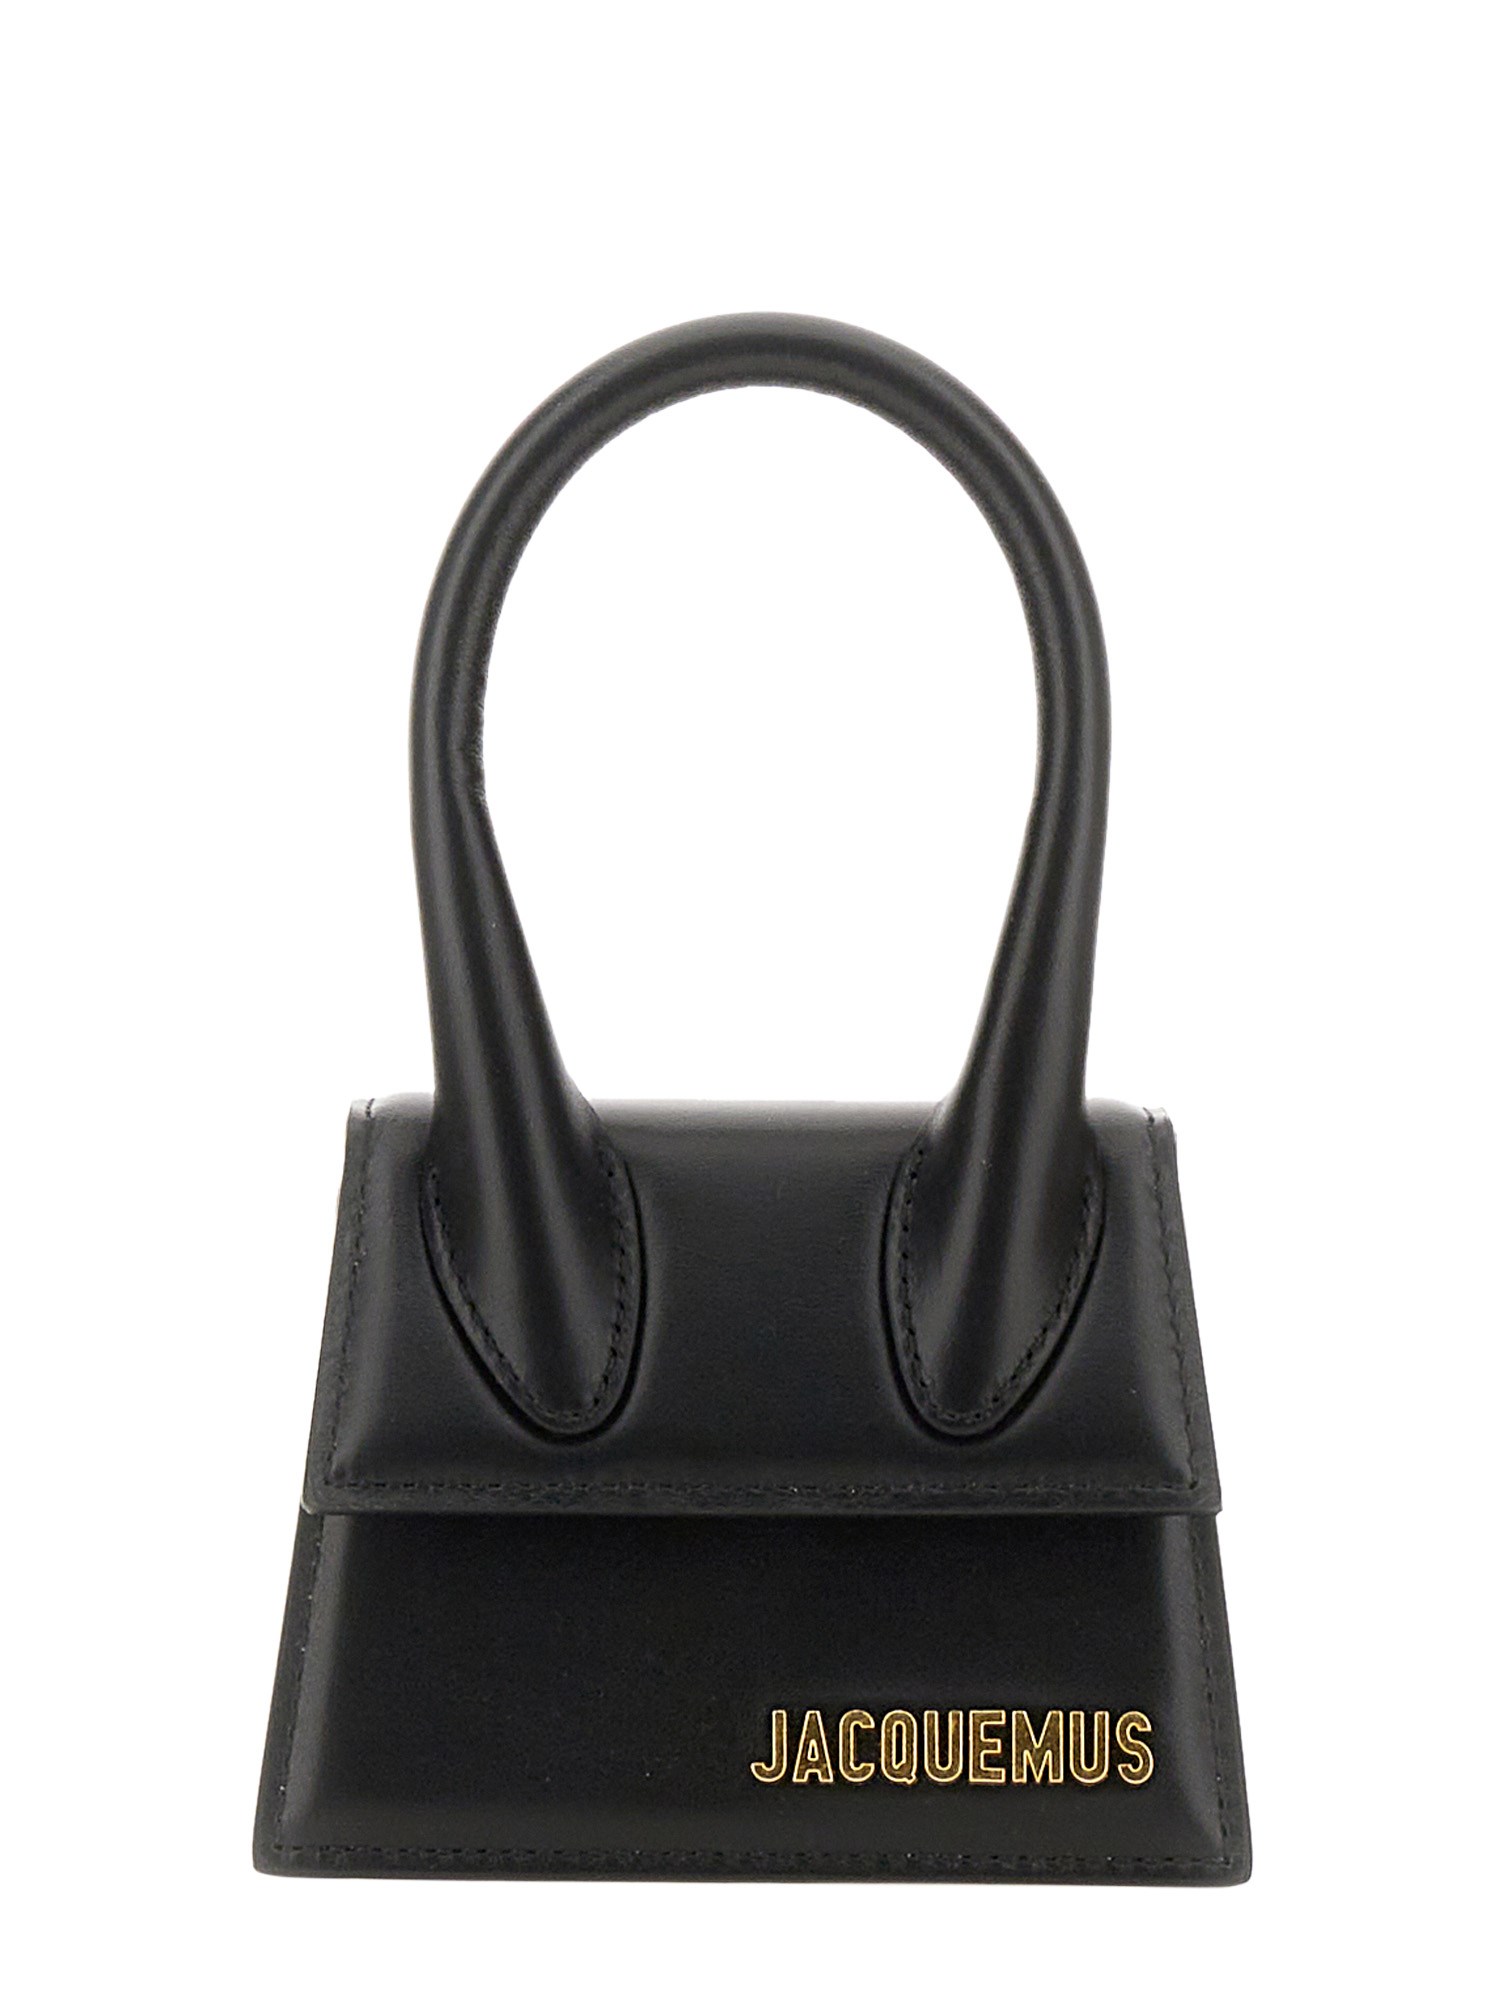 Jacquemus Le Chiquito Bag In Black